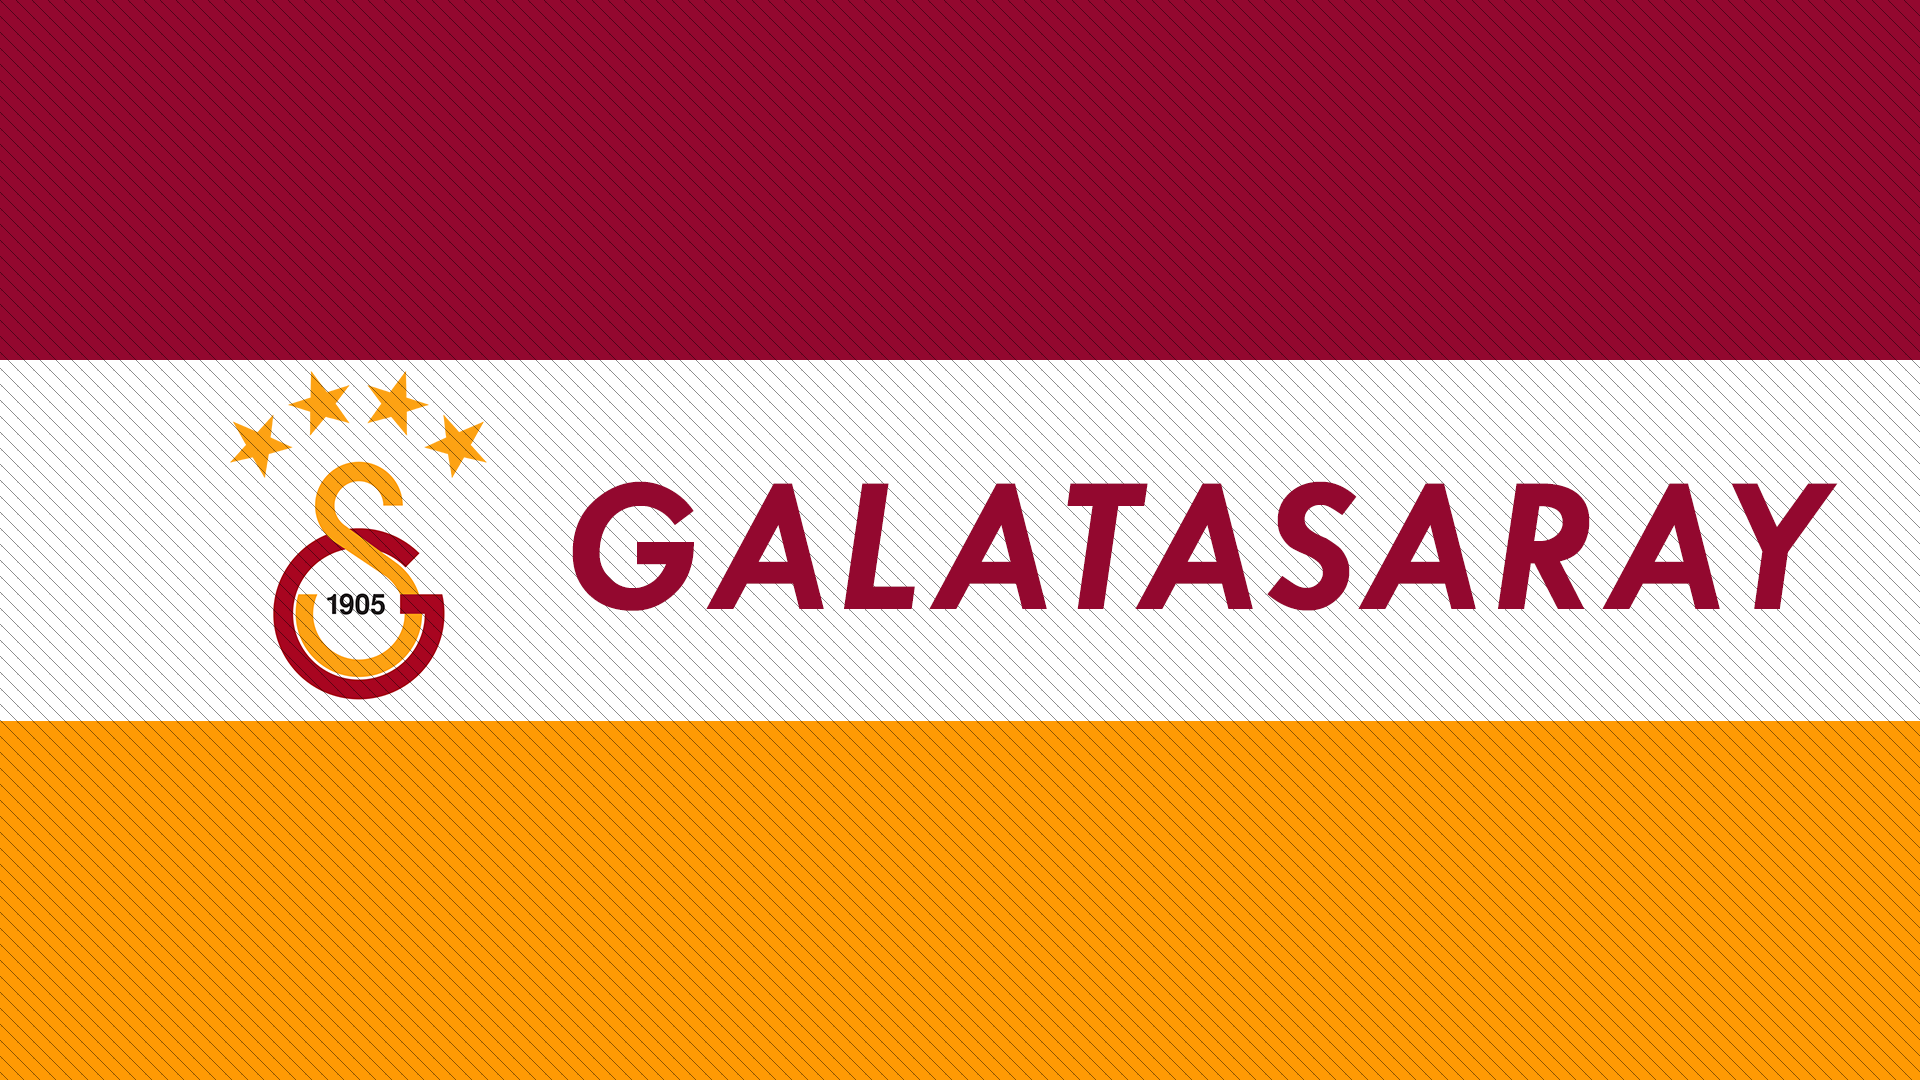 General 1920x1080 Galatasaray S.K. 1905 (Year) logo Sport Club soccer clubs Turkey